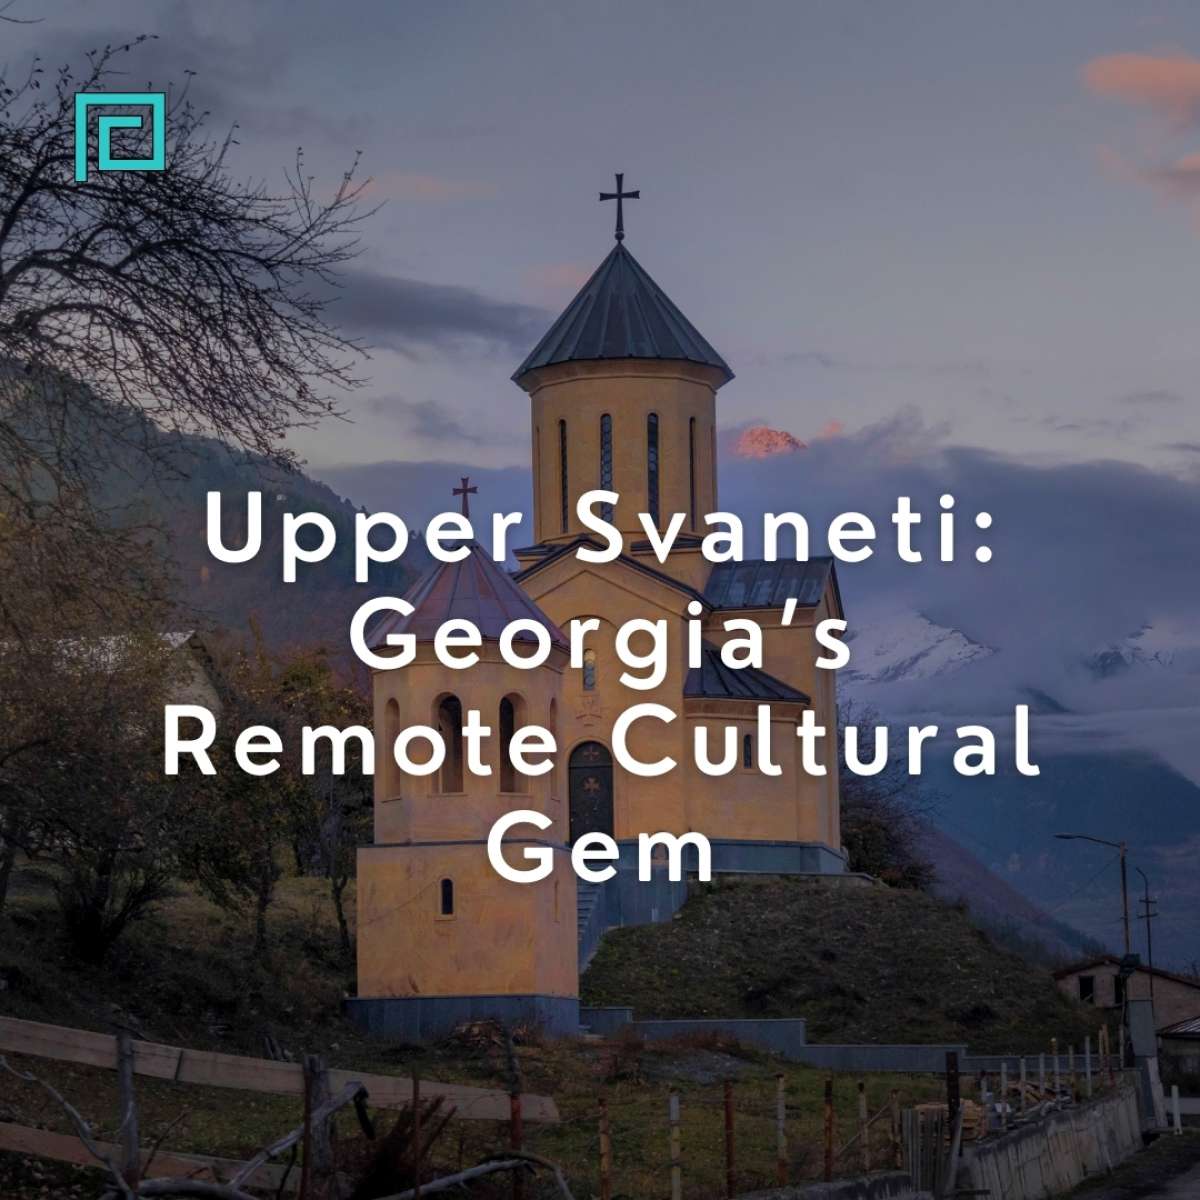 Upper Svaneti: Georgia’s Remote Cultural Gem